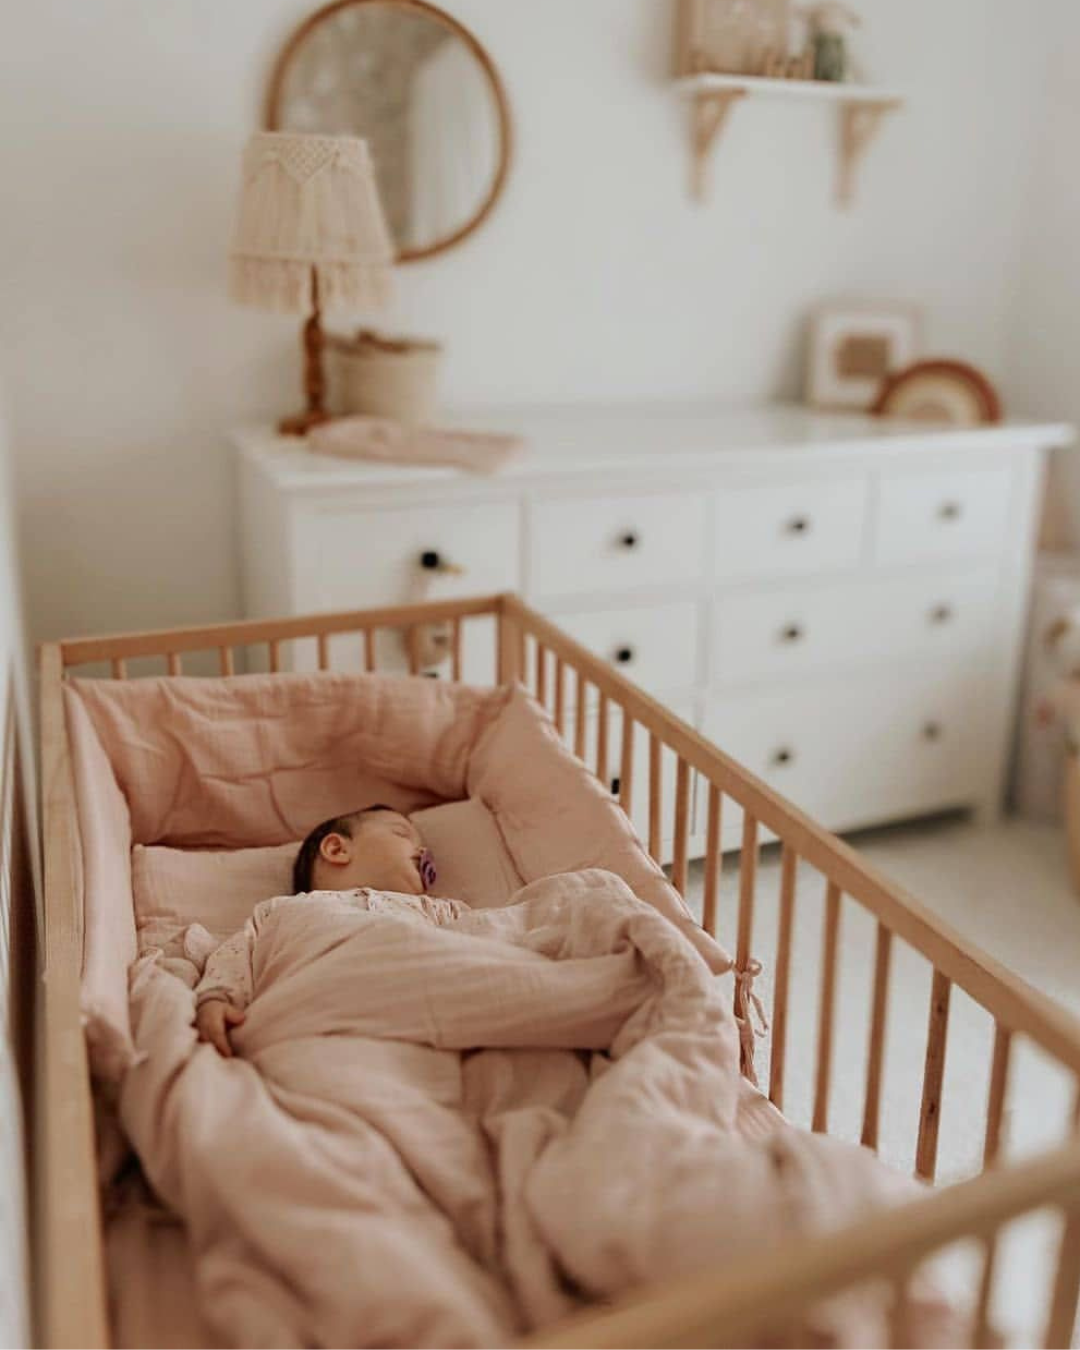 posteljina za bebe od muslina u drvenom krevecu. Beba spava prekrivena prekrivacem u navlaci za prekrivac od muslina